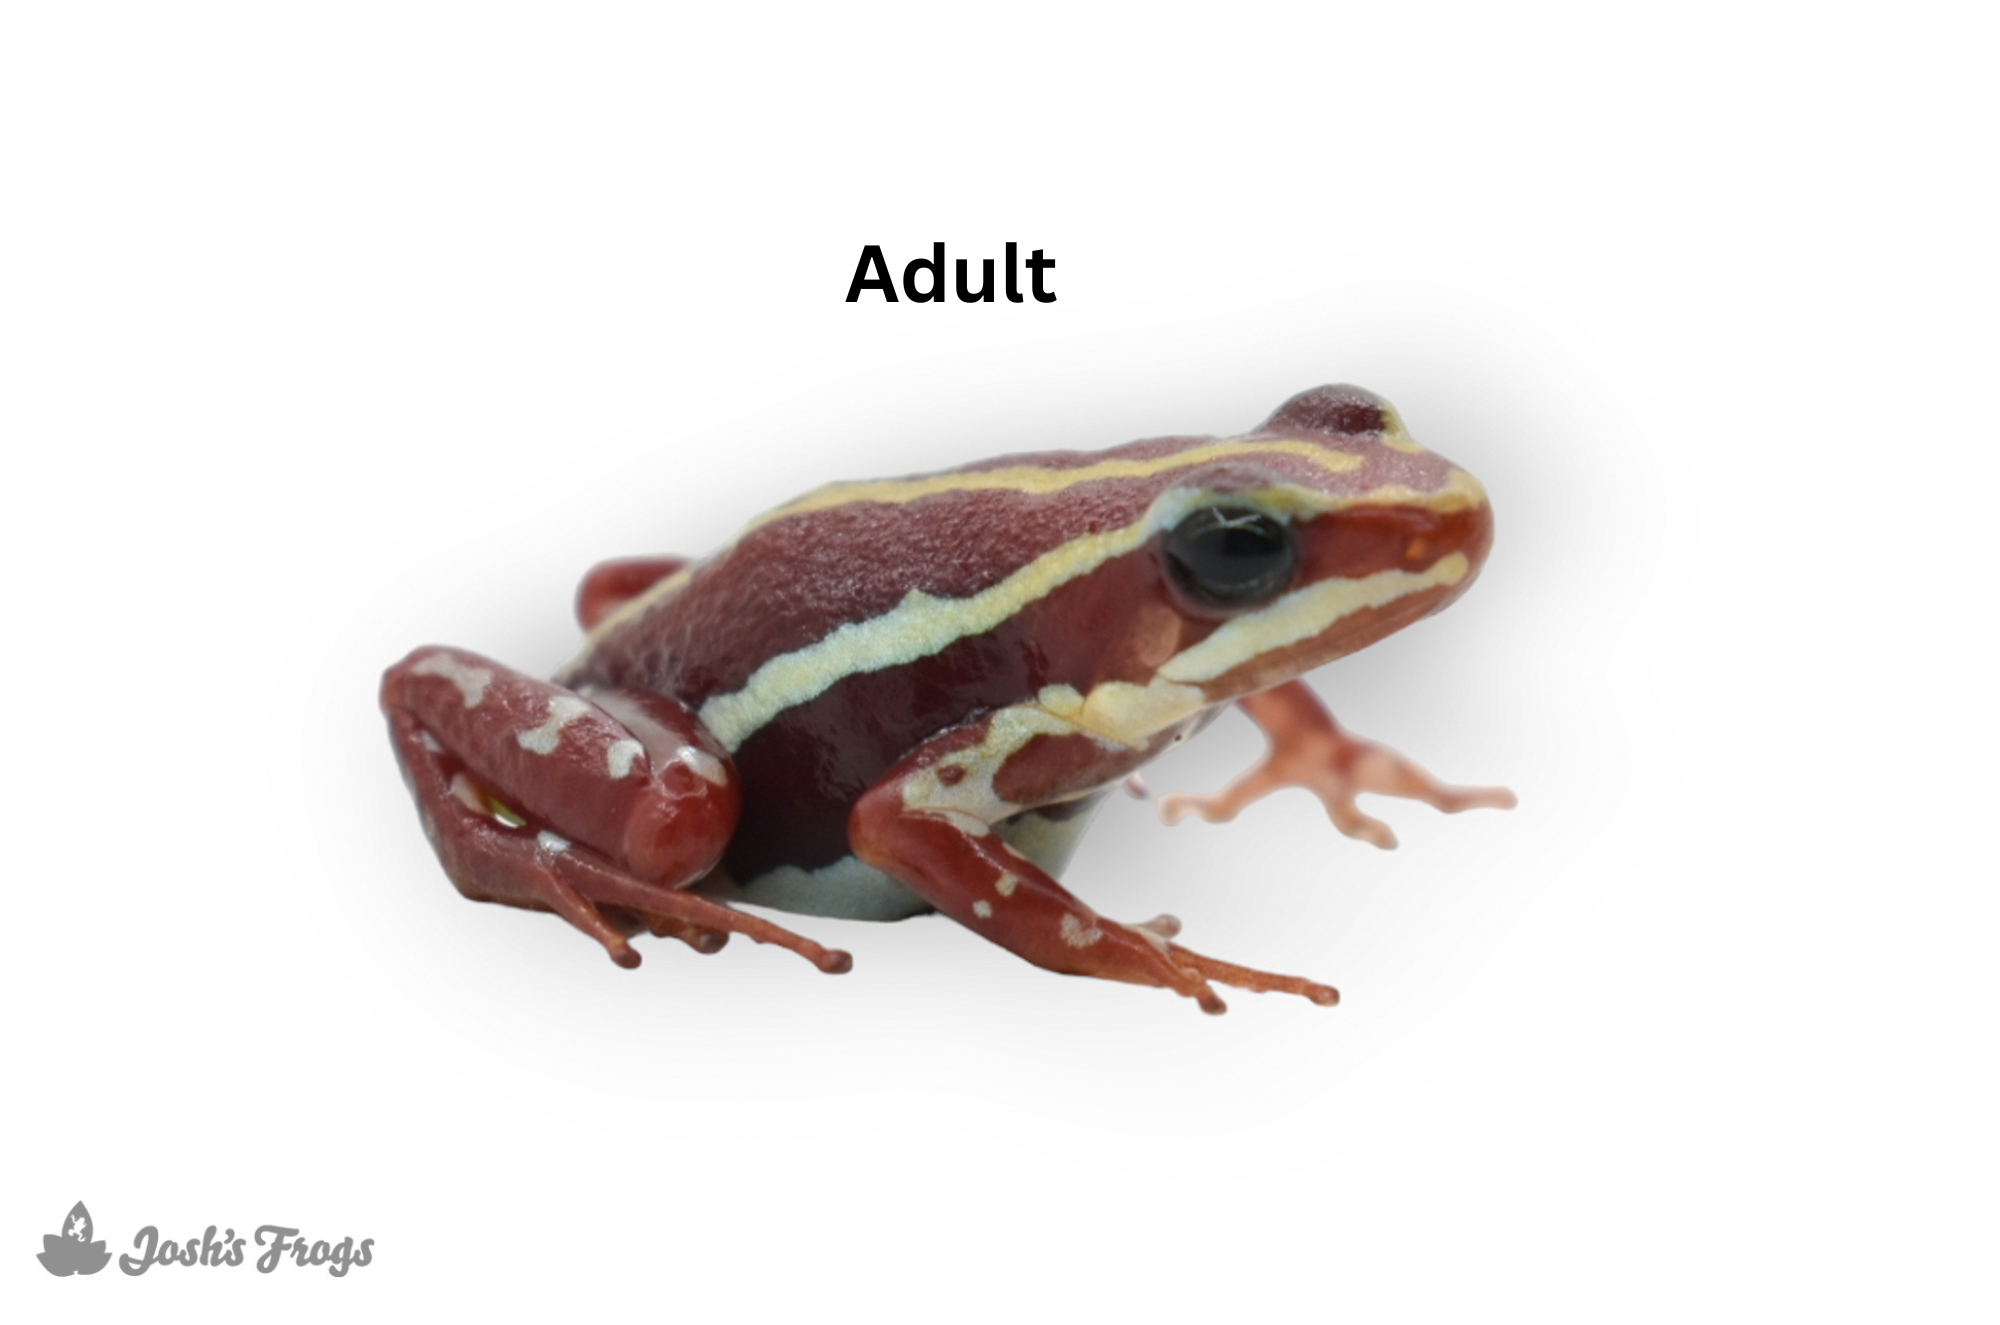 Epipedobates anthonyi 'Zarayunga' (Captive Bred) - Phantasmal Poison Dart Frog